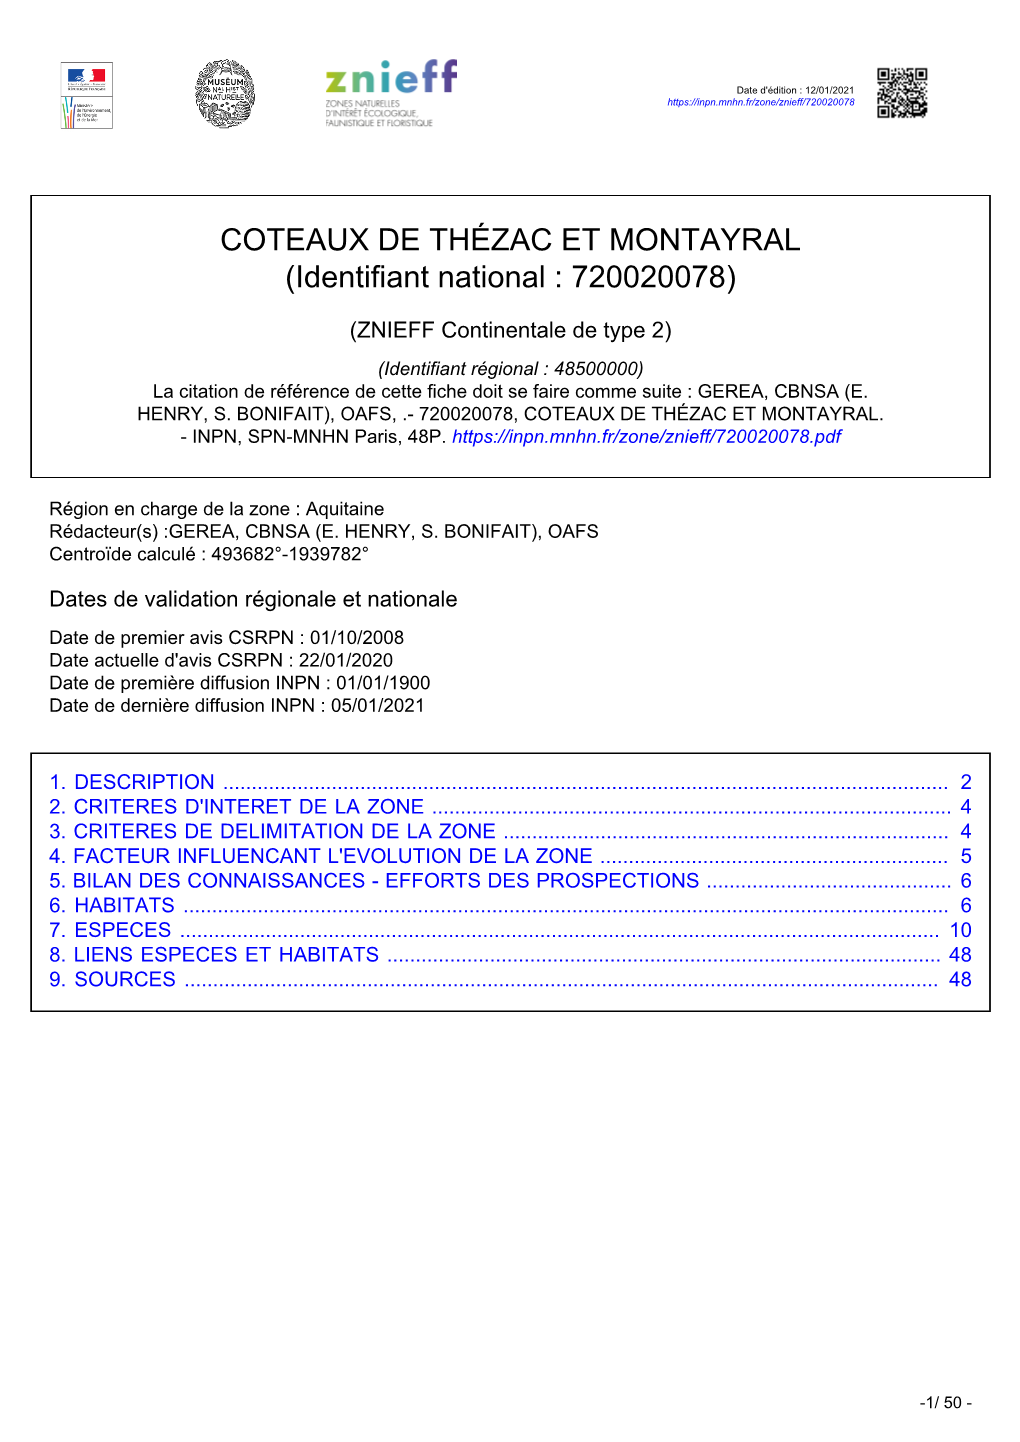 COTEAUX DE THÉZAC ET MONTAYRAL (Identifiant National : 720020078)